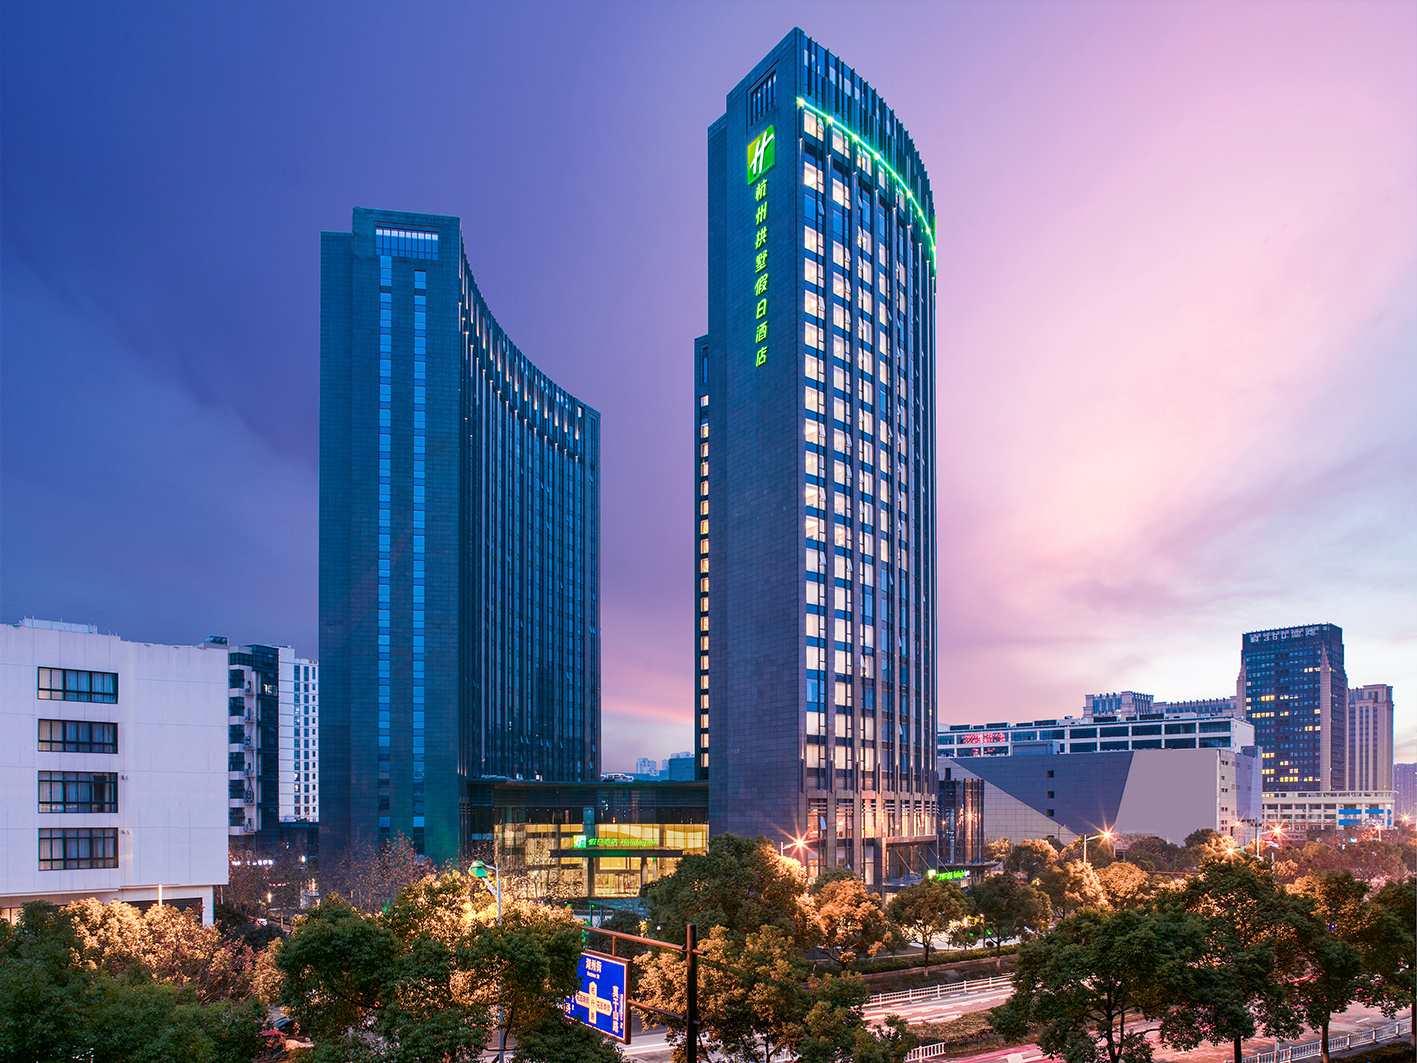 洲际酒店集团旗下全新一代假日酒店在华开业 - 酒店新闻 - 中国酒店新闻网-酒店号